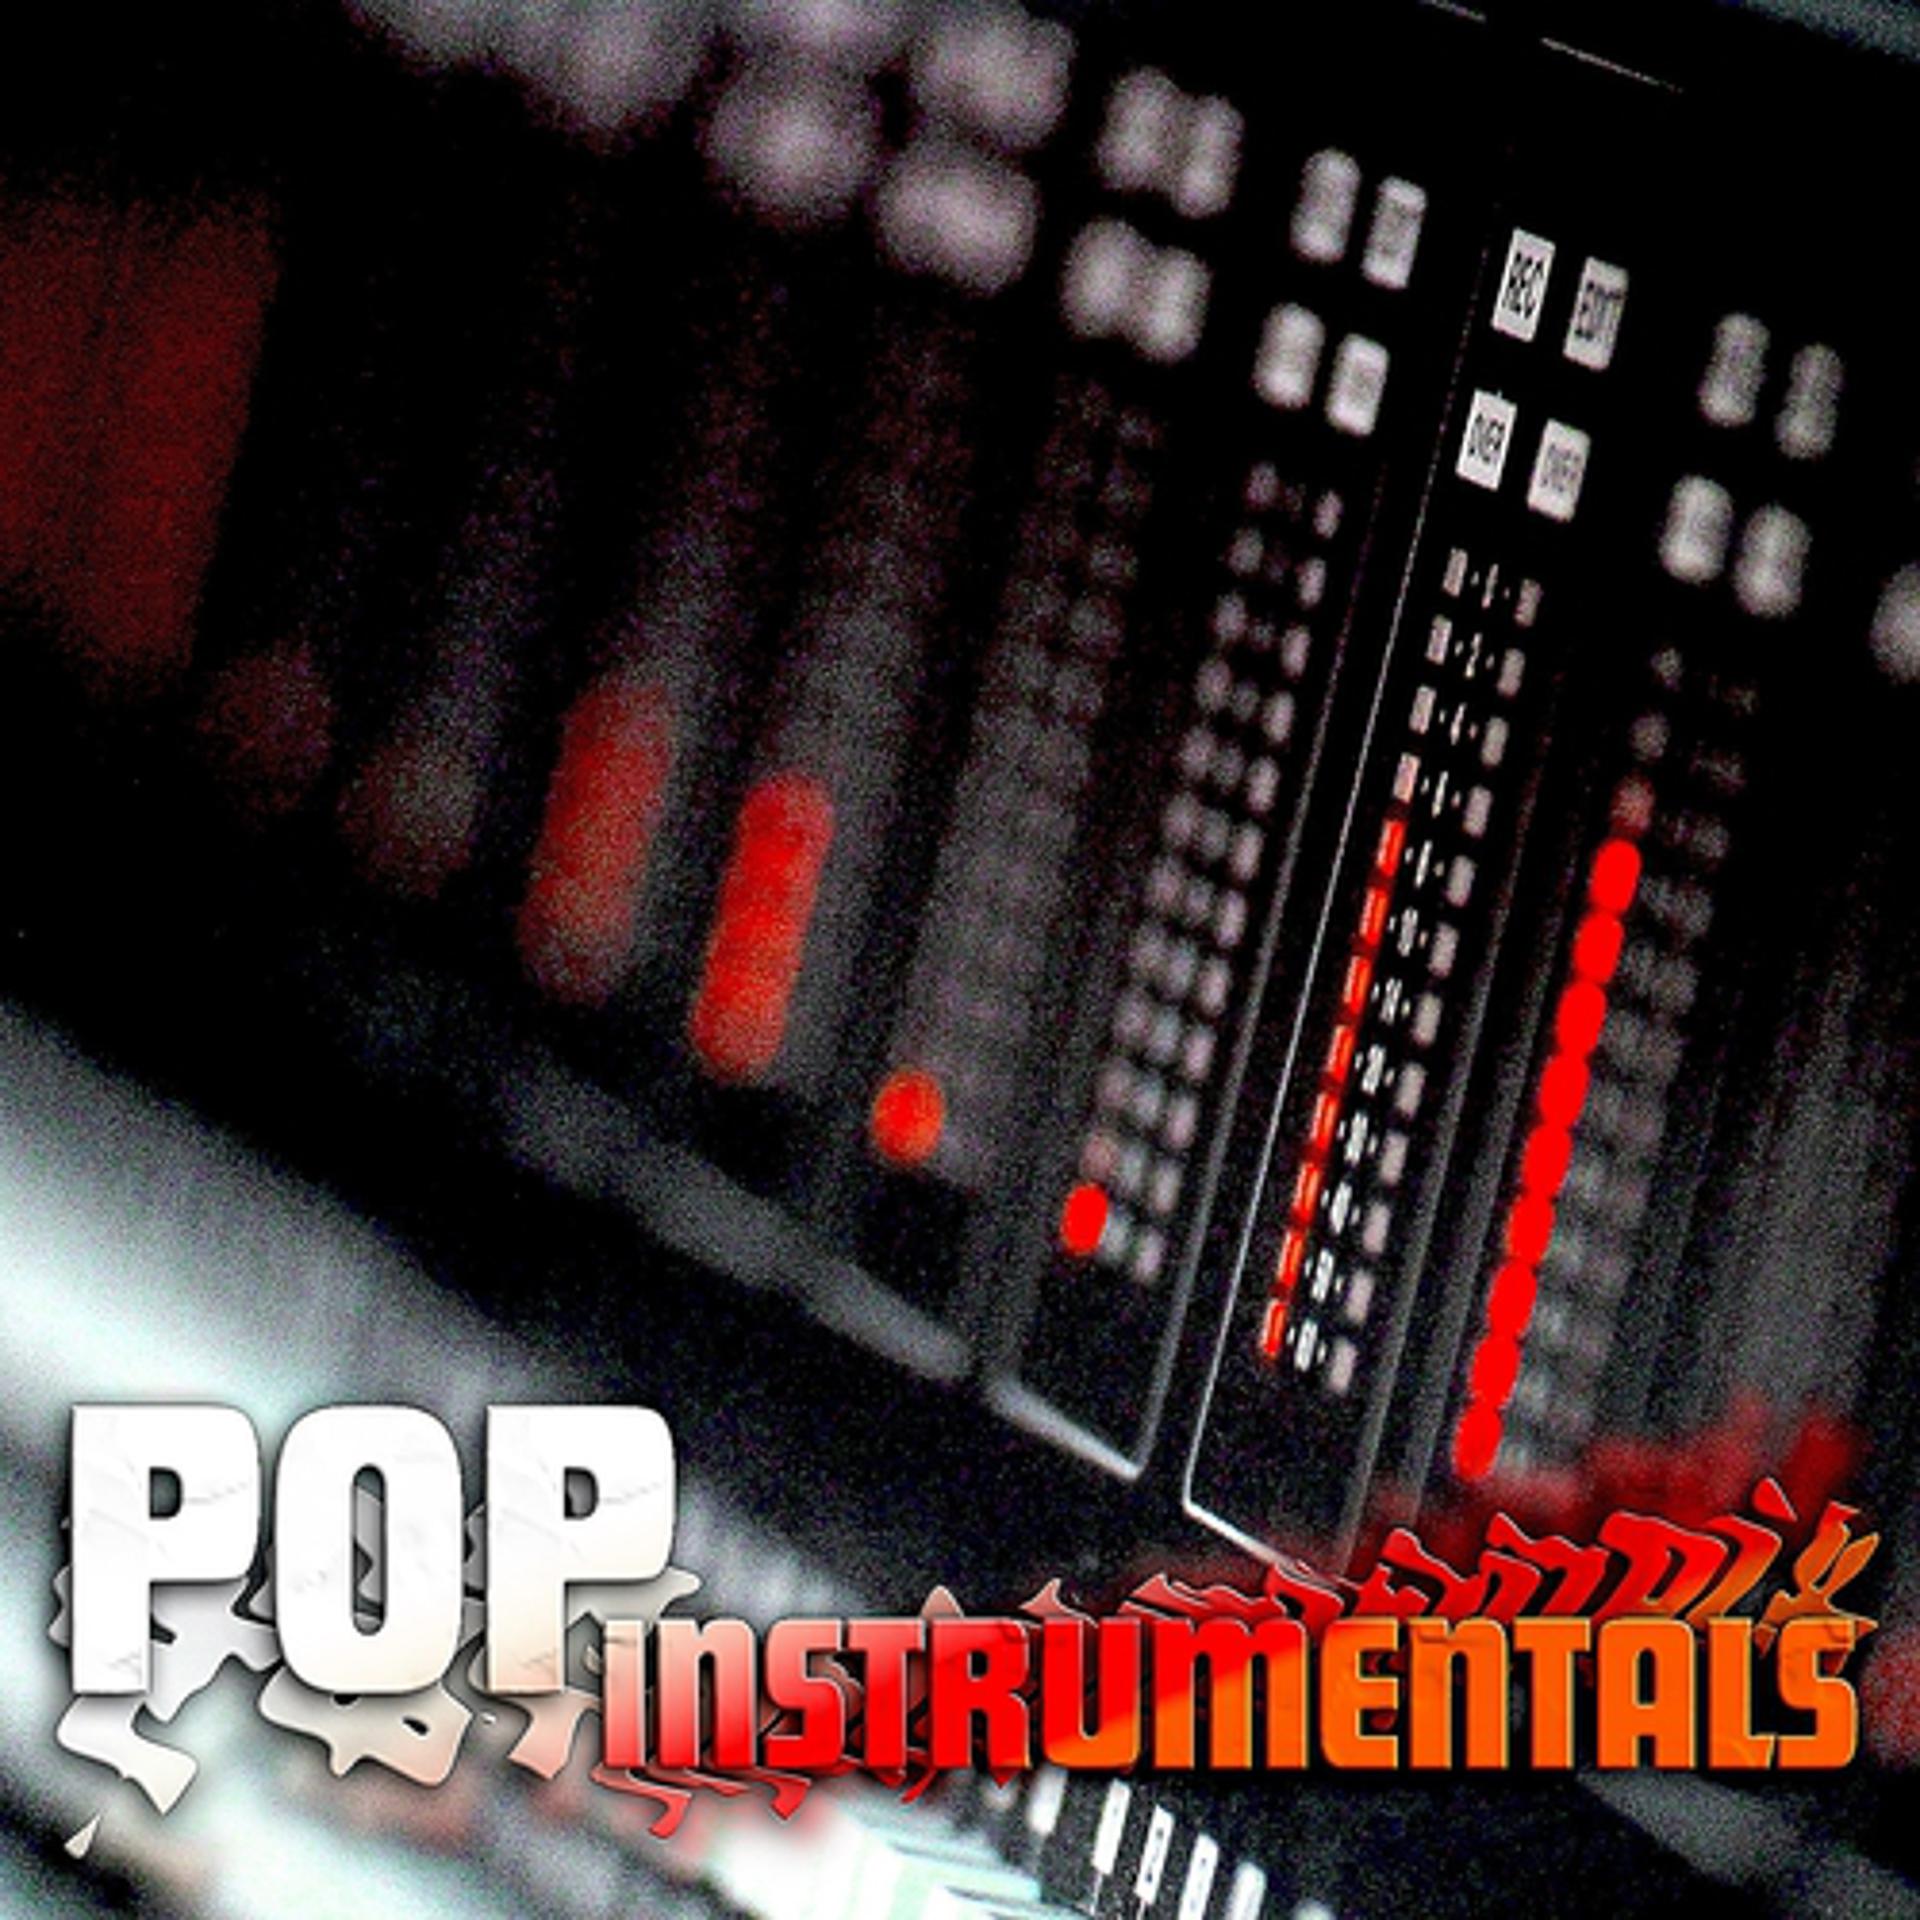 Инструментальная версия песни. 3д инструментал. Pop Instrumental. Instrumental Version.